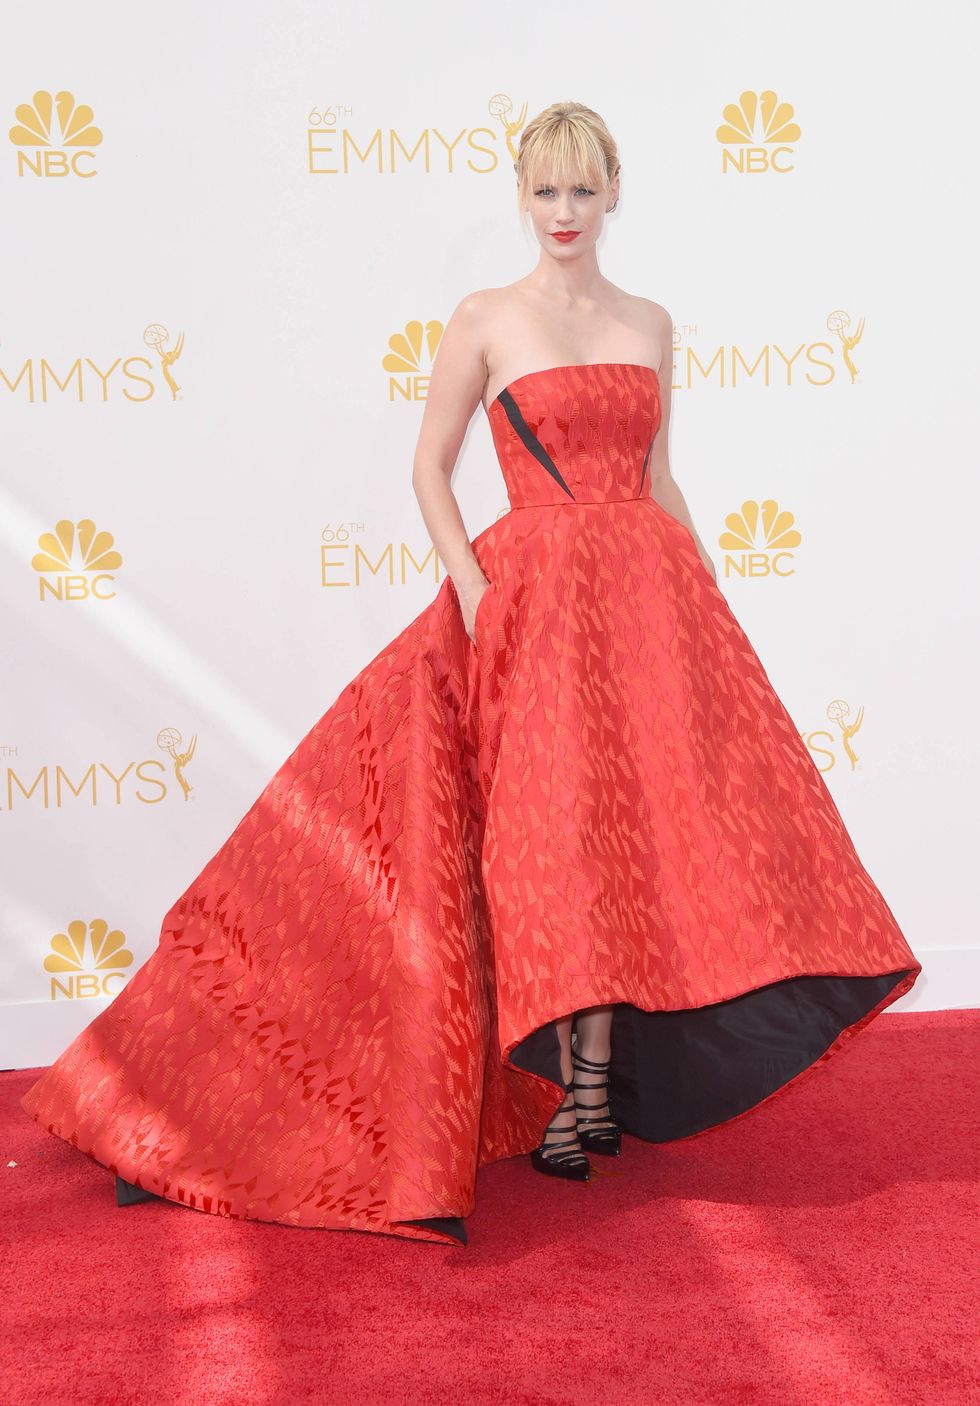 January Jones looks lovely in her Prabal Gurung dress at the Emmy Awards